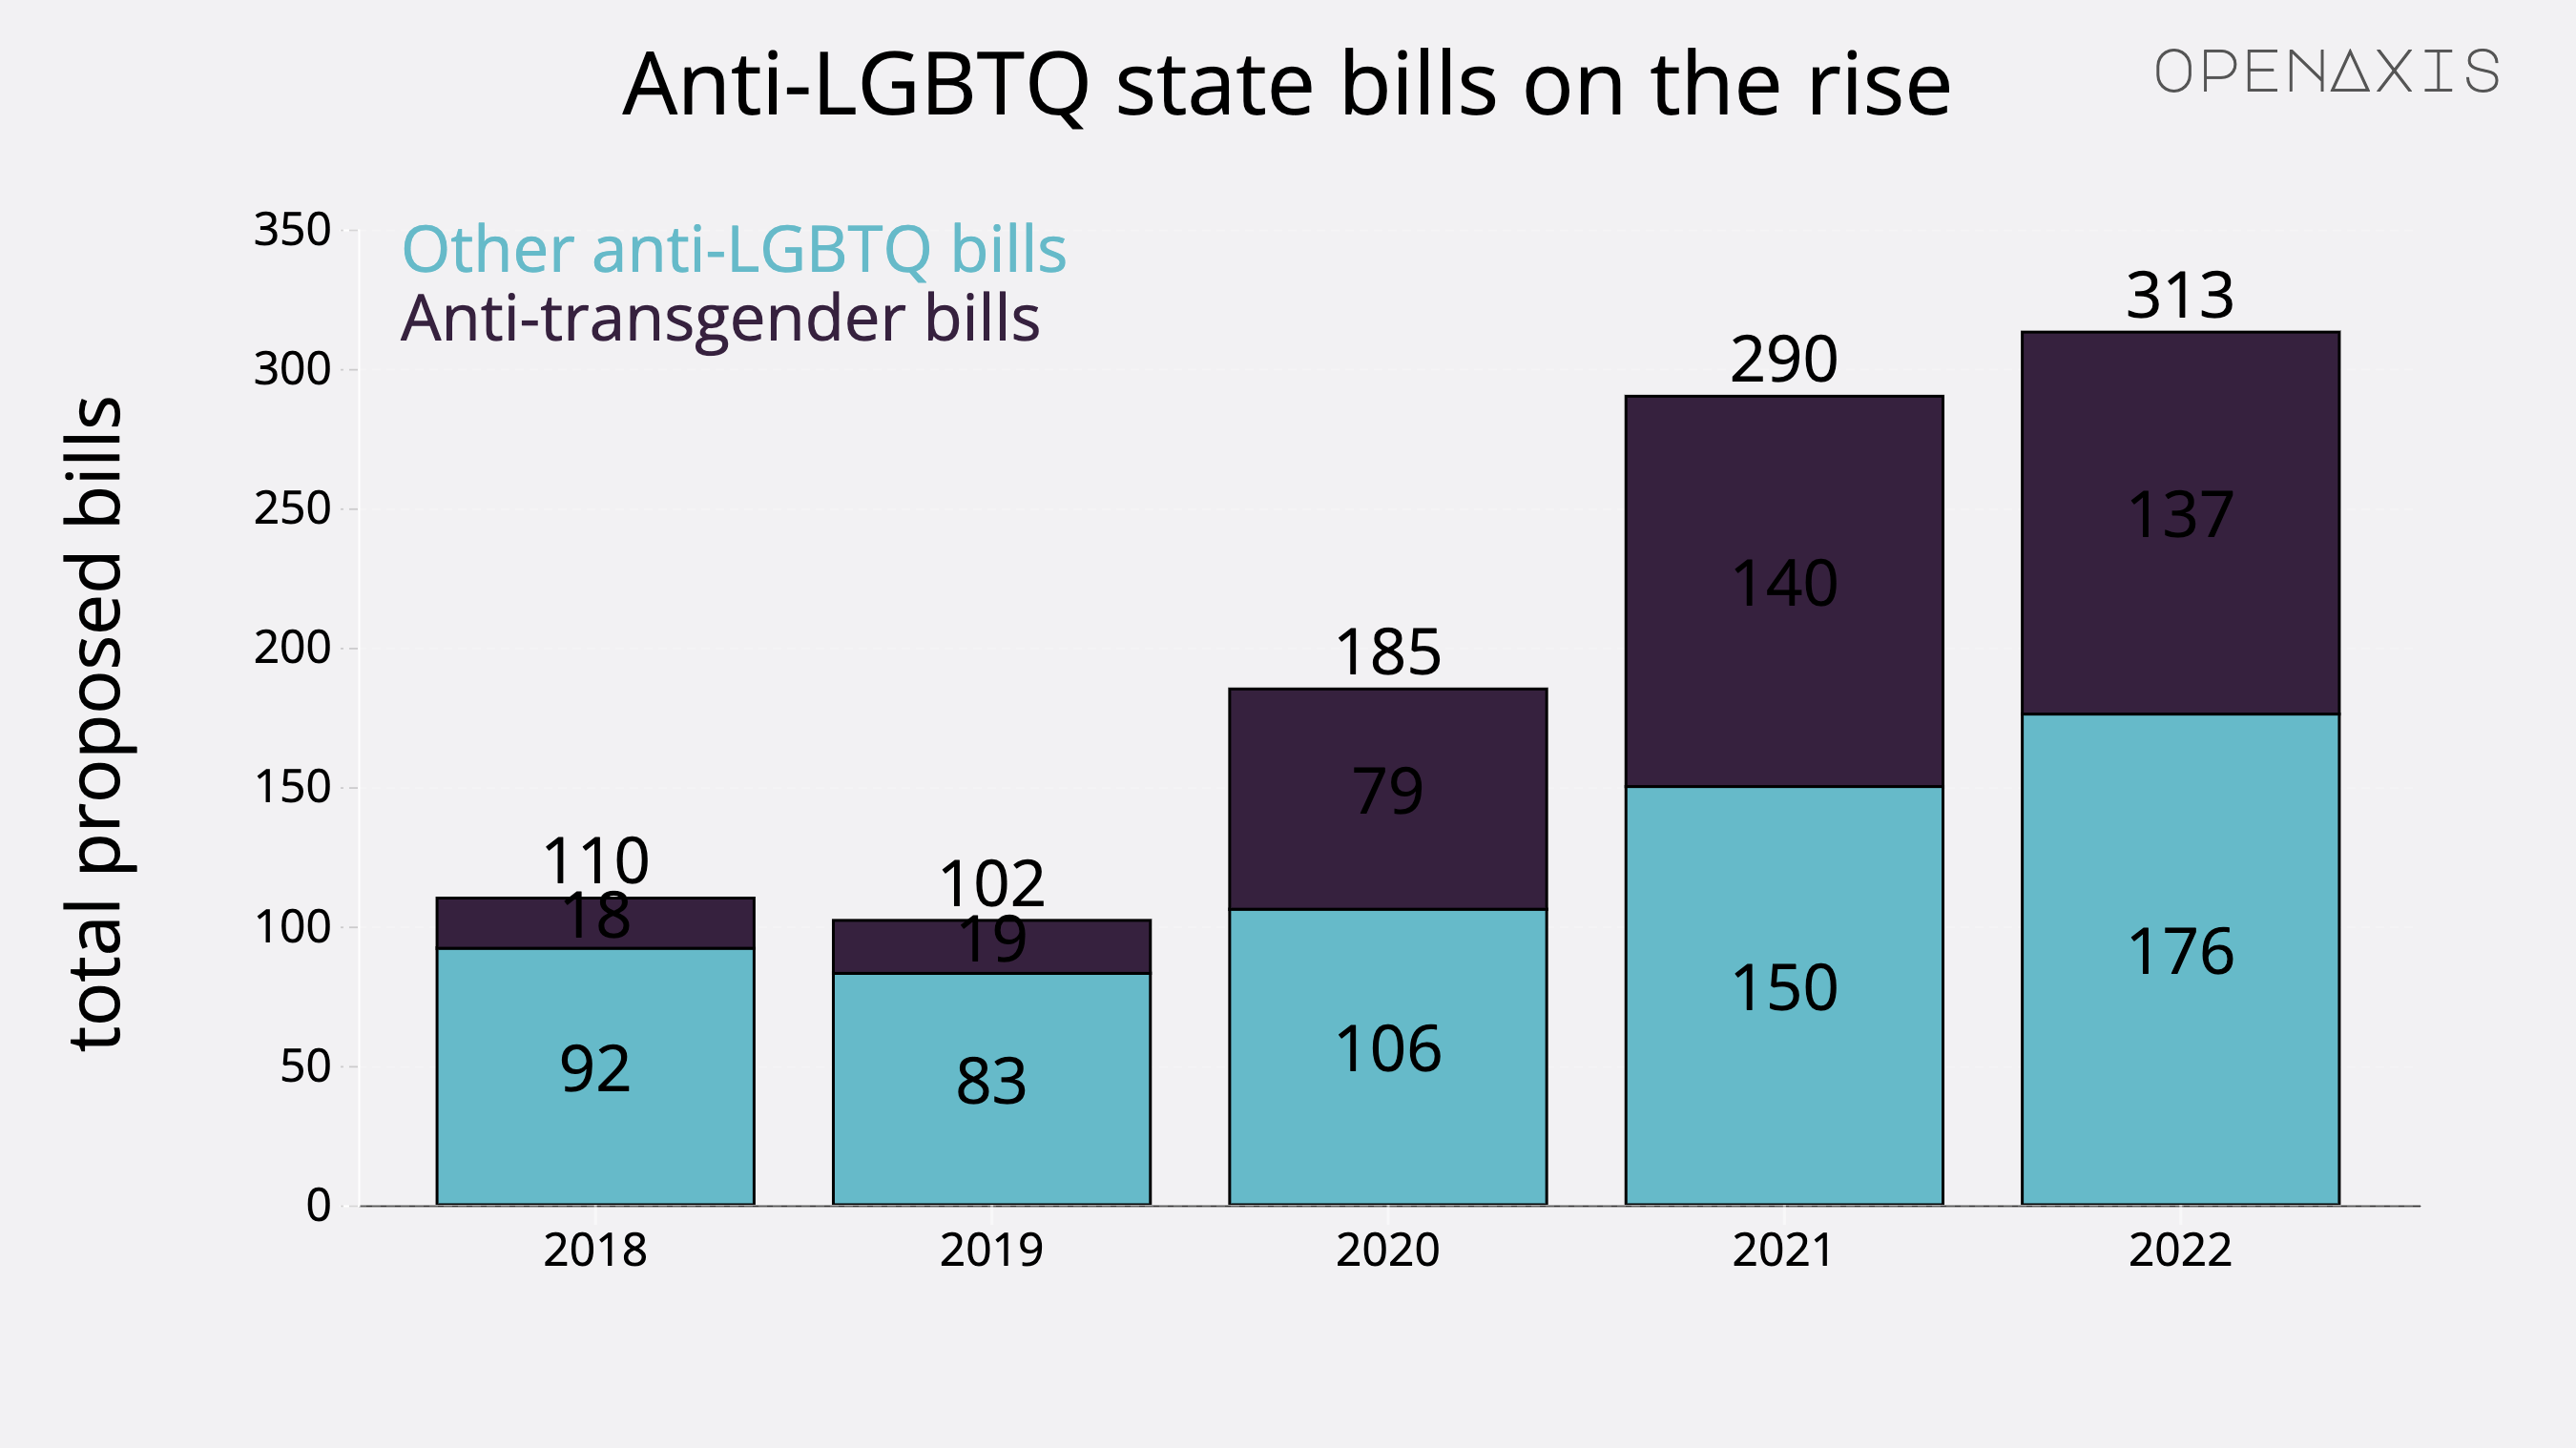 "Anti-LGBTQ state bills on the rise"